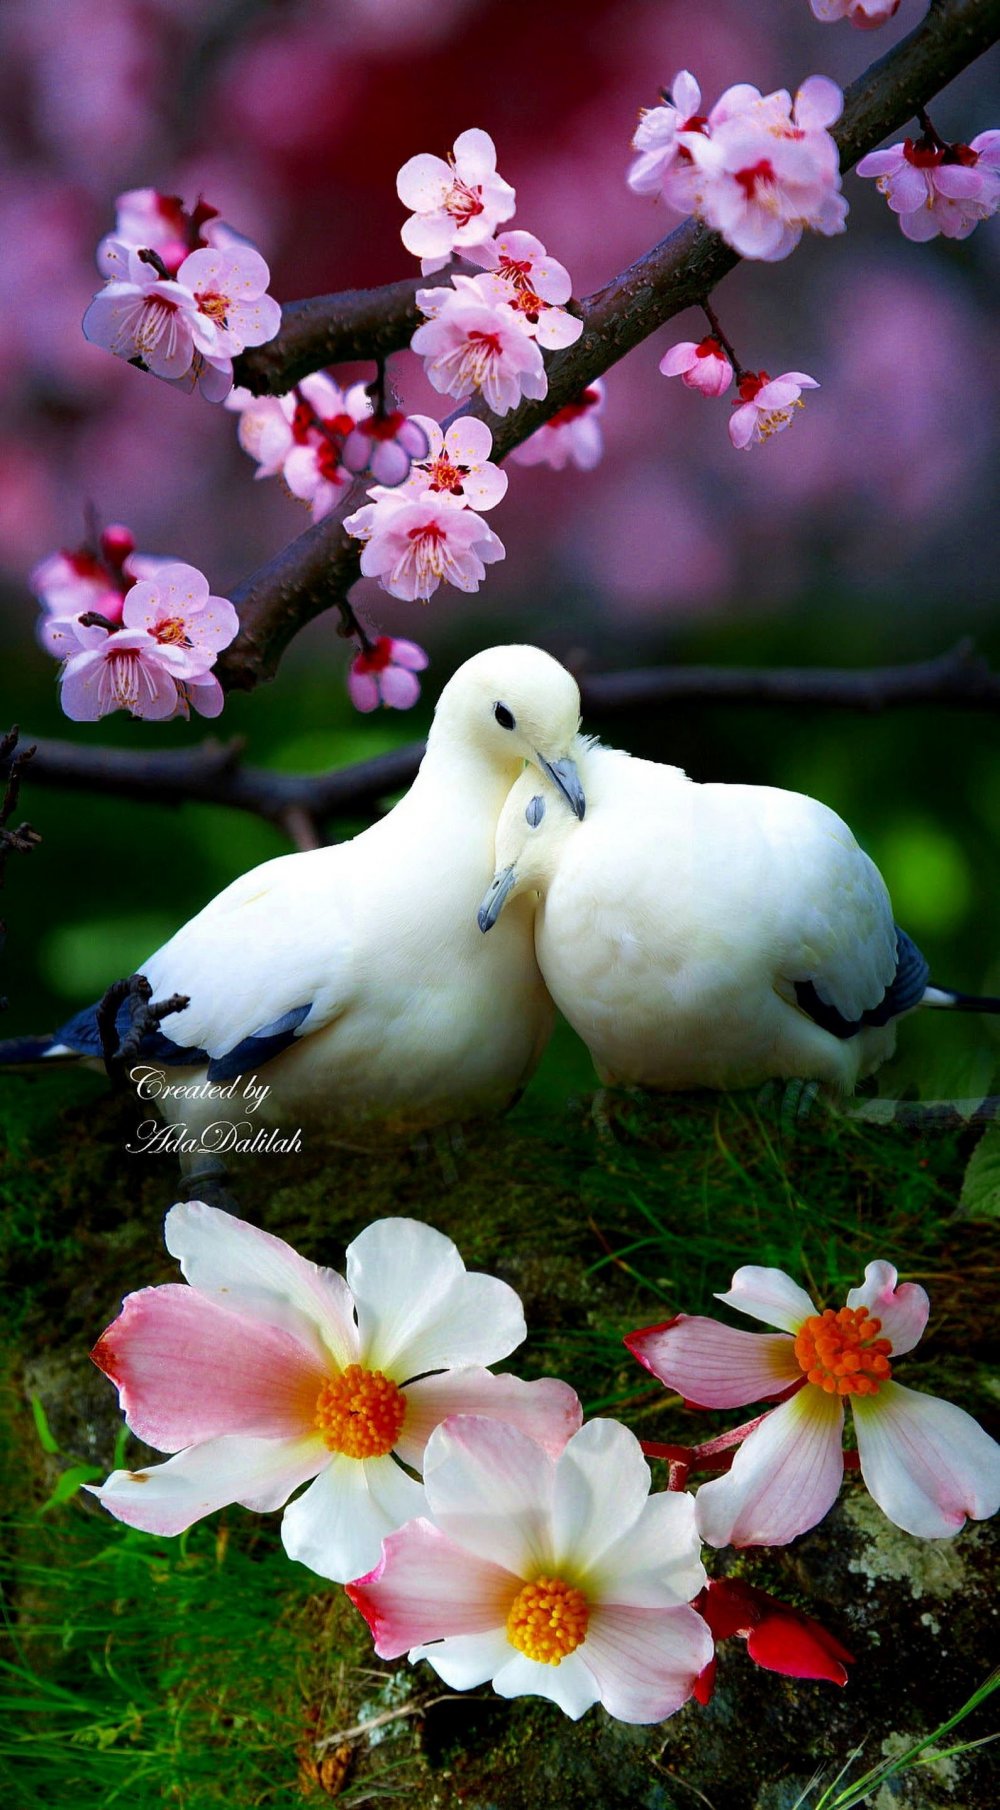 Красивые картинки с птицами и цветами